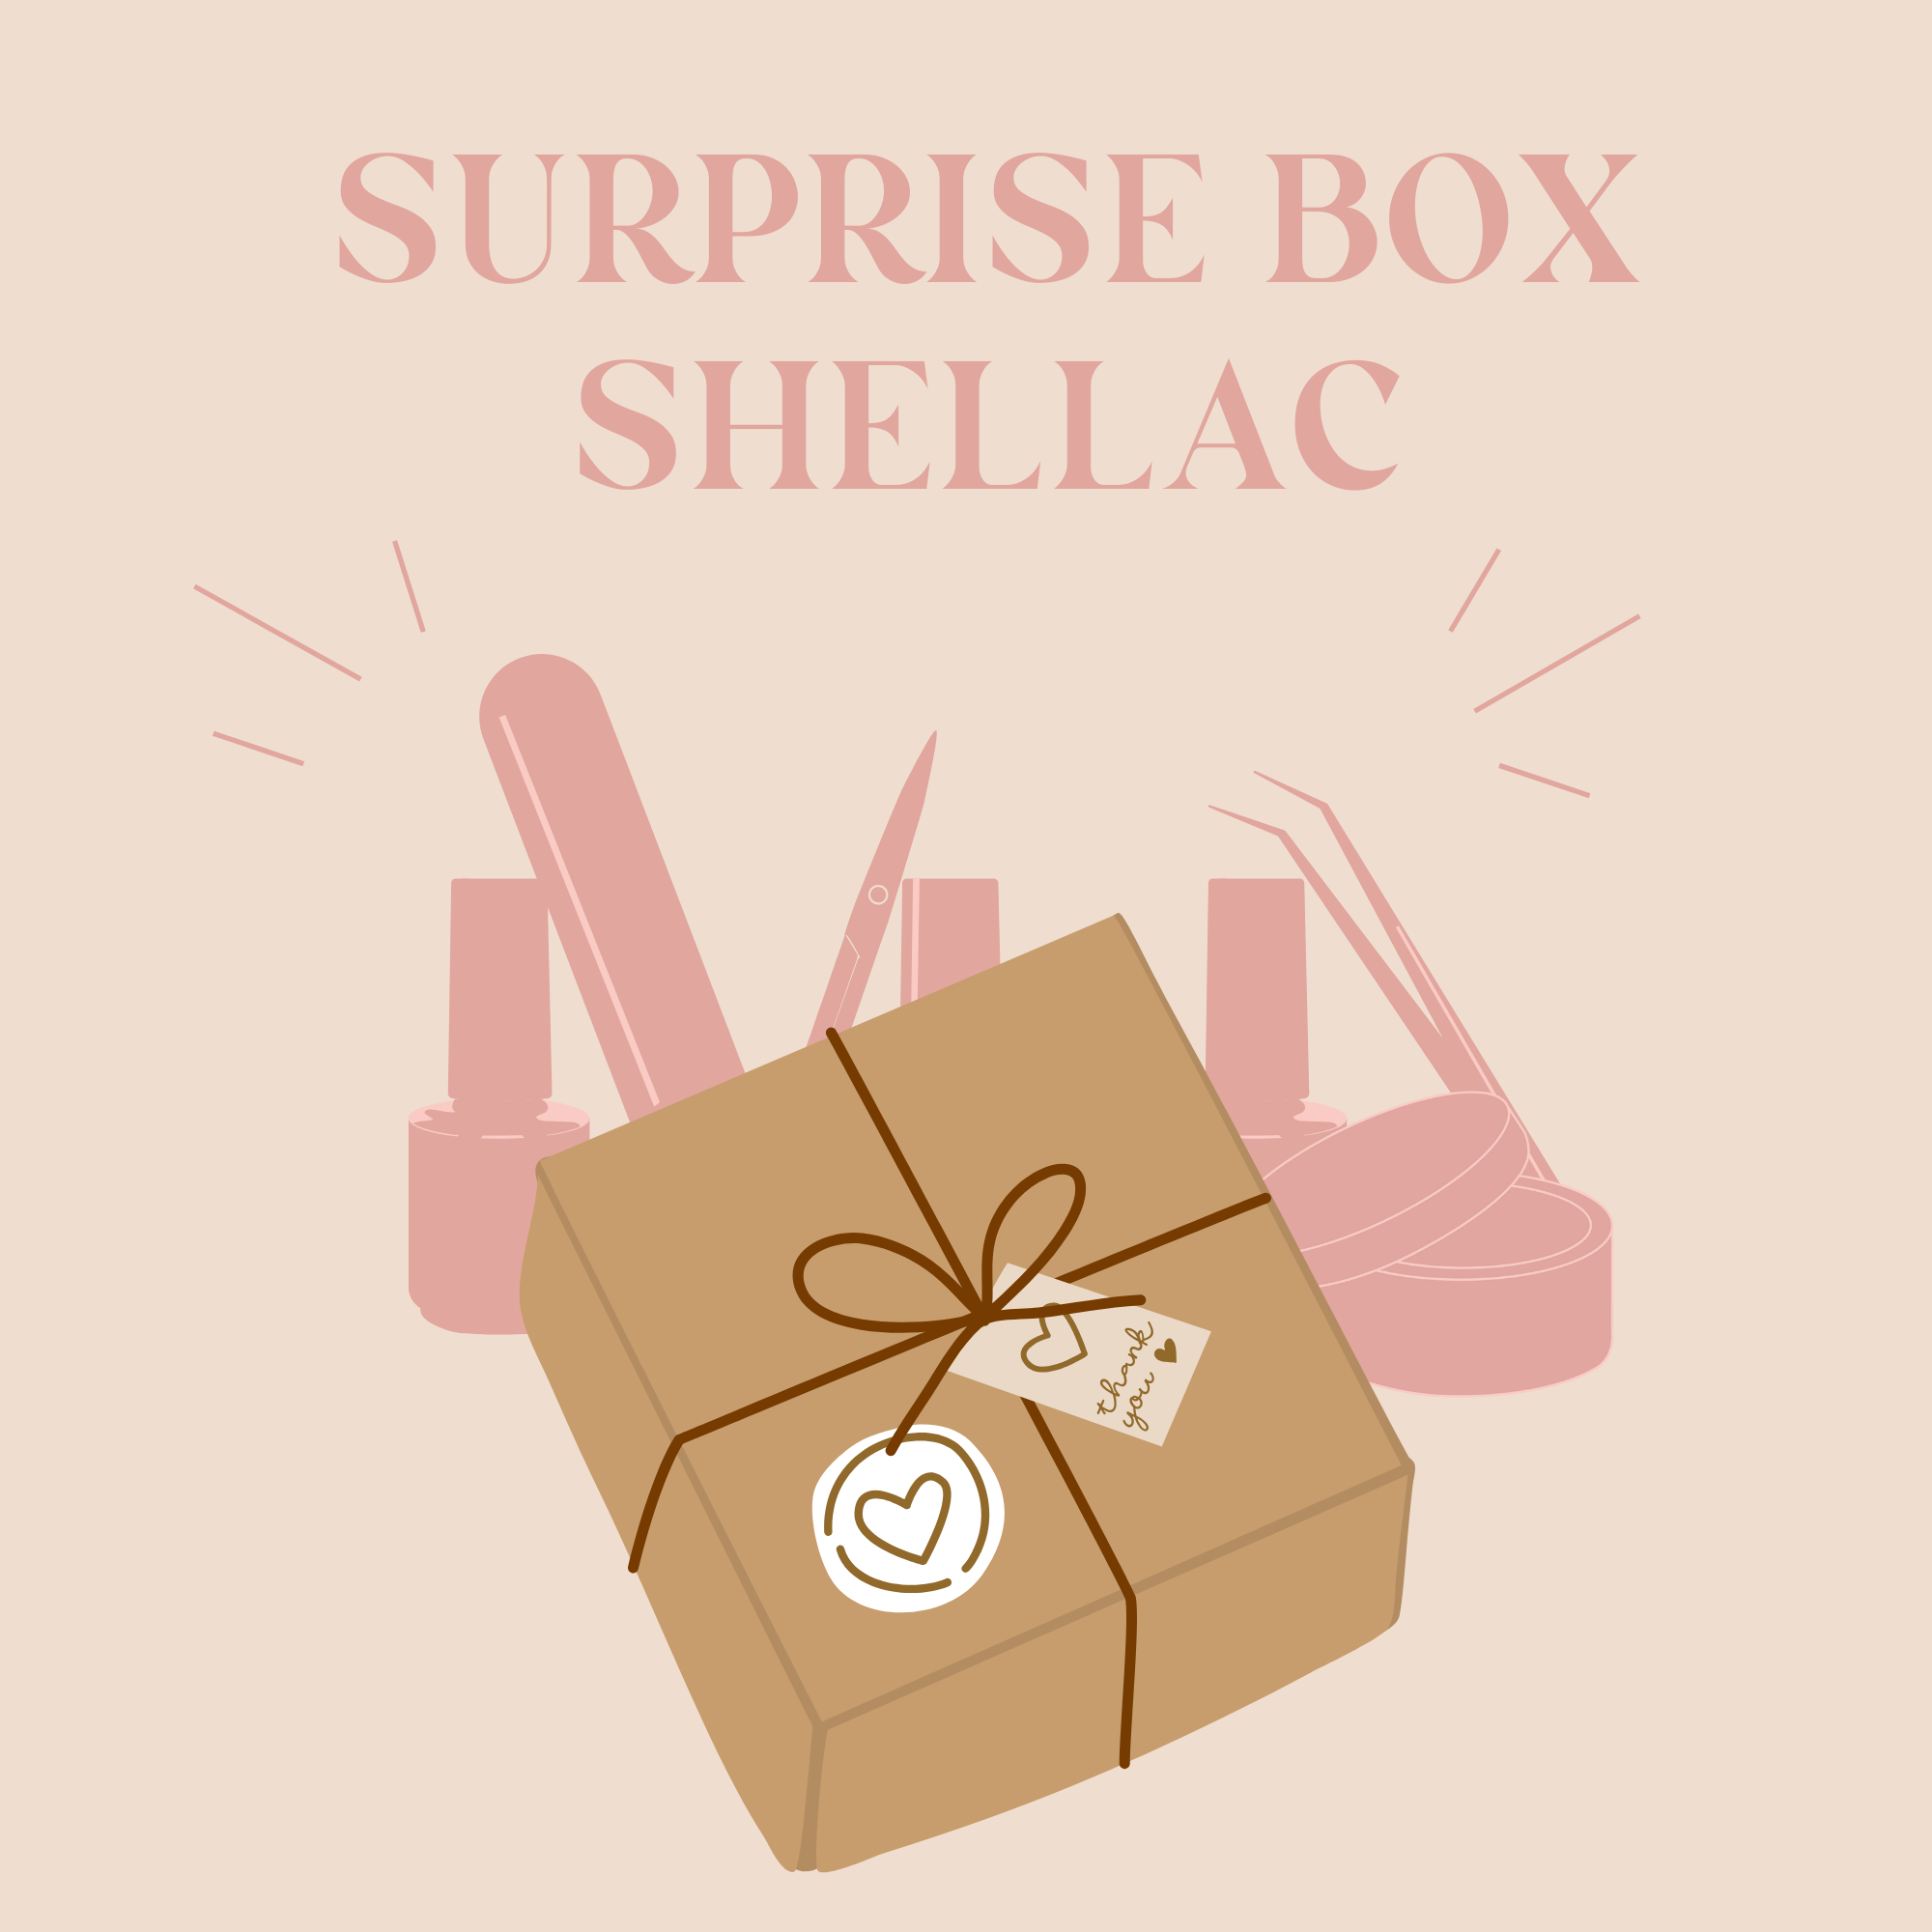 Surprise Box Shellac